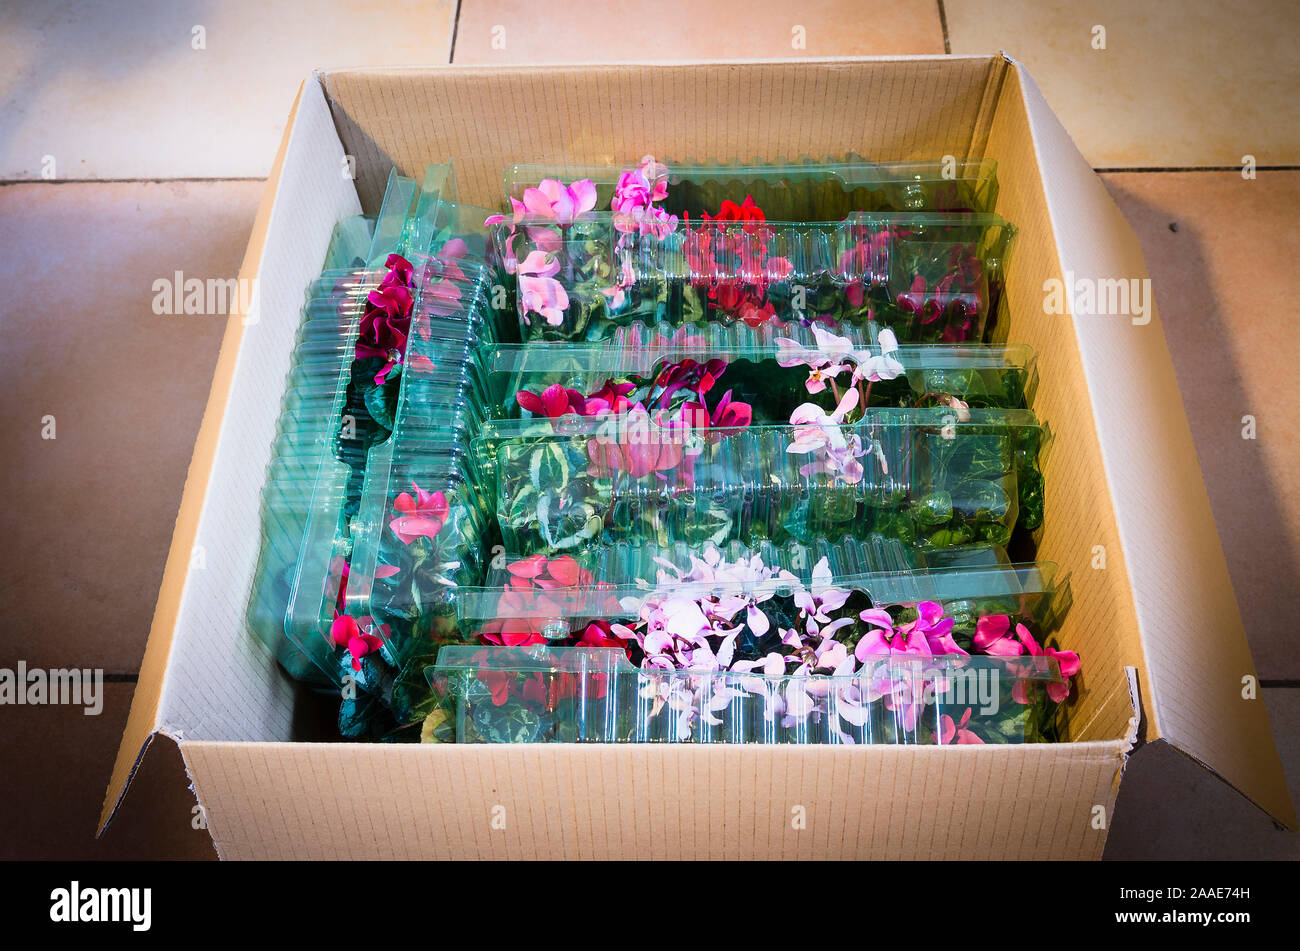 Eine E-Mail-box Bestellen eröffnet eine Sammlung von jungen Topfpflanzen fjlowering Cyclamen persicum Metis Belastung zu offenbaren, die online gekauft, effectove bprotection d Stockfoto